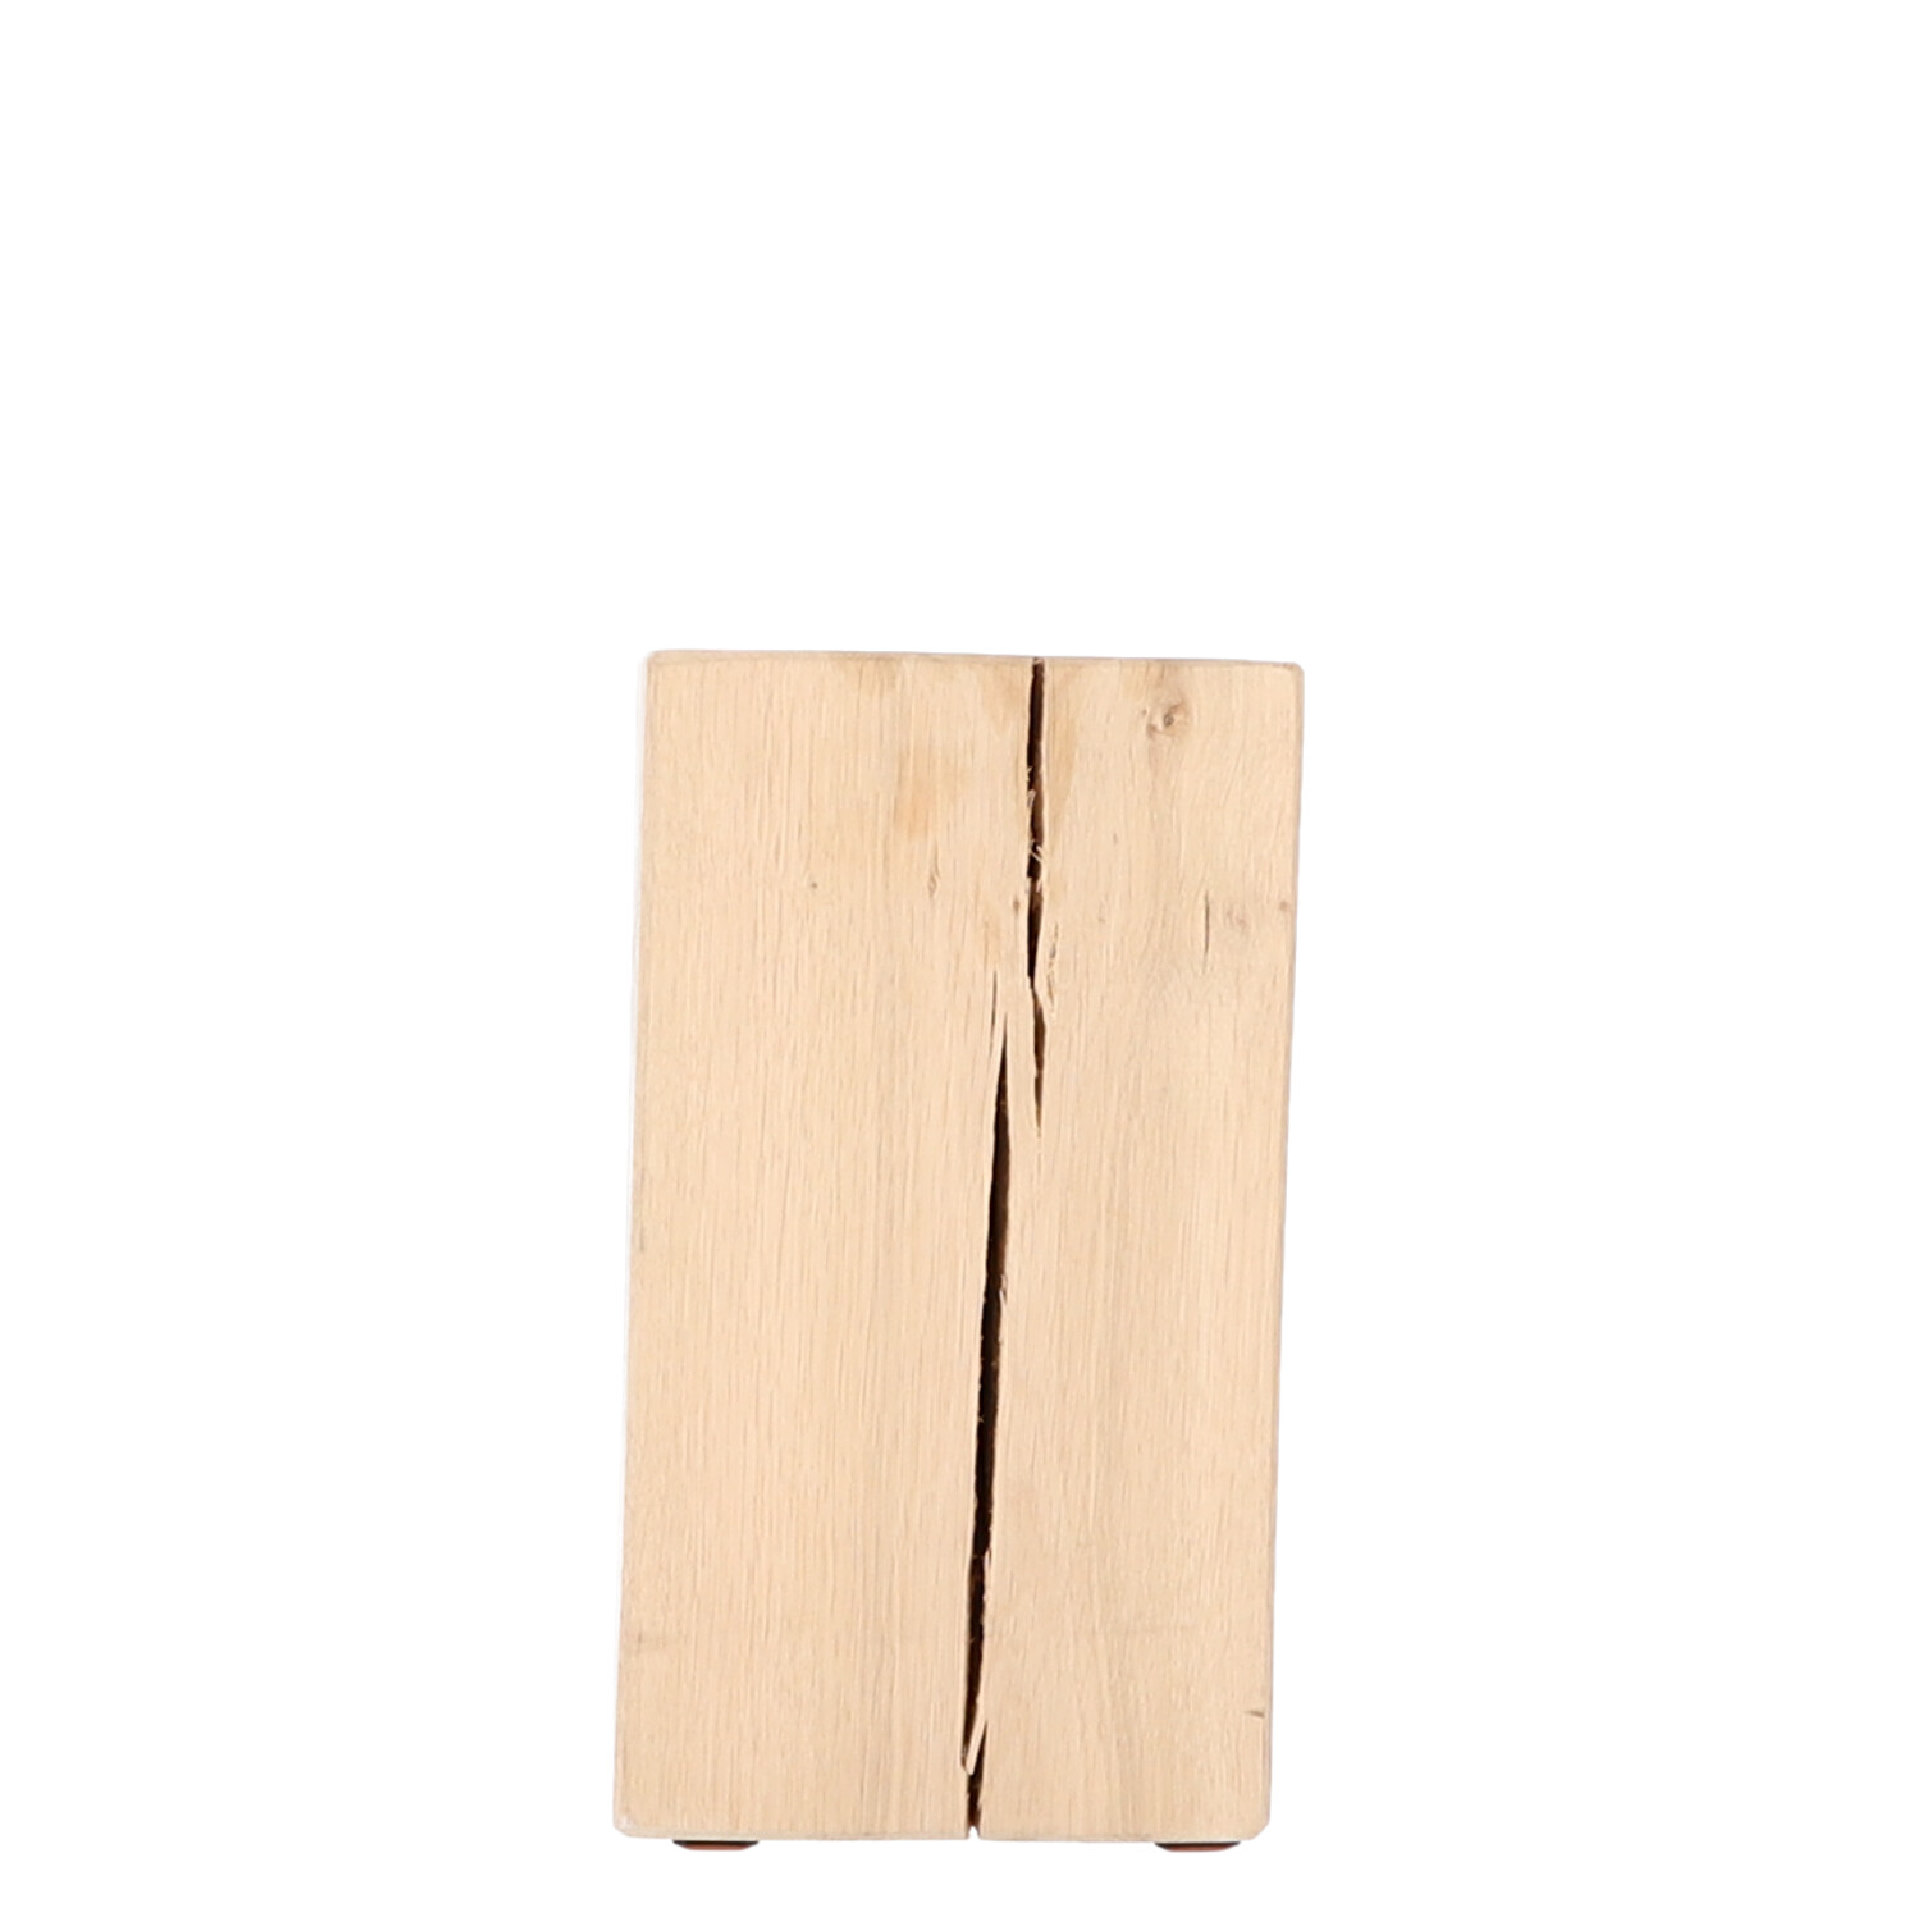 Massiver Beistelltisch Lukas von JanKurtz aus massiven Eichenholz